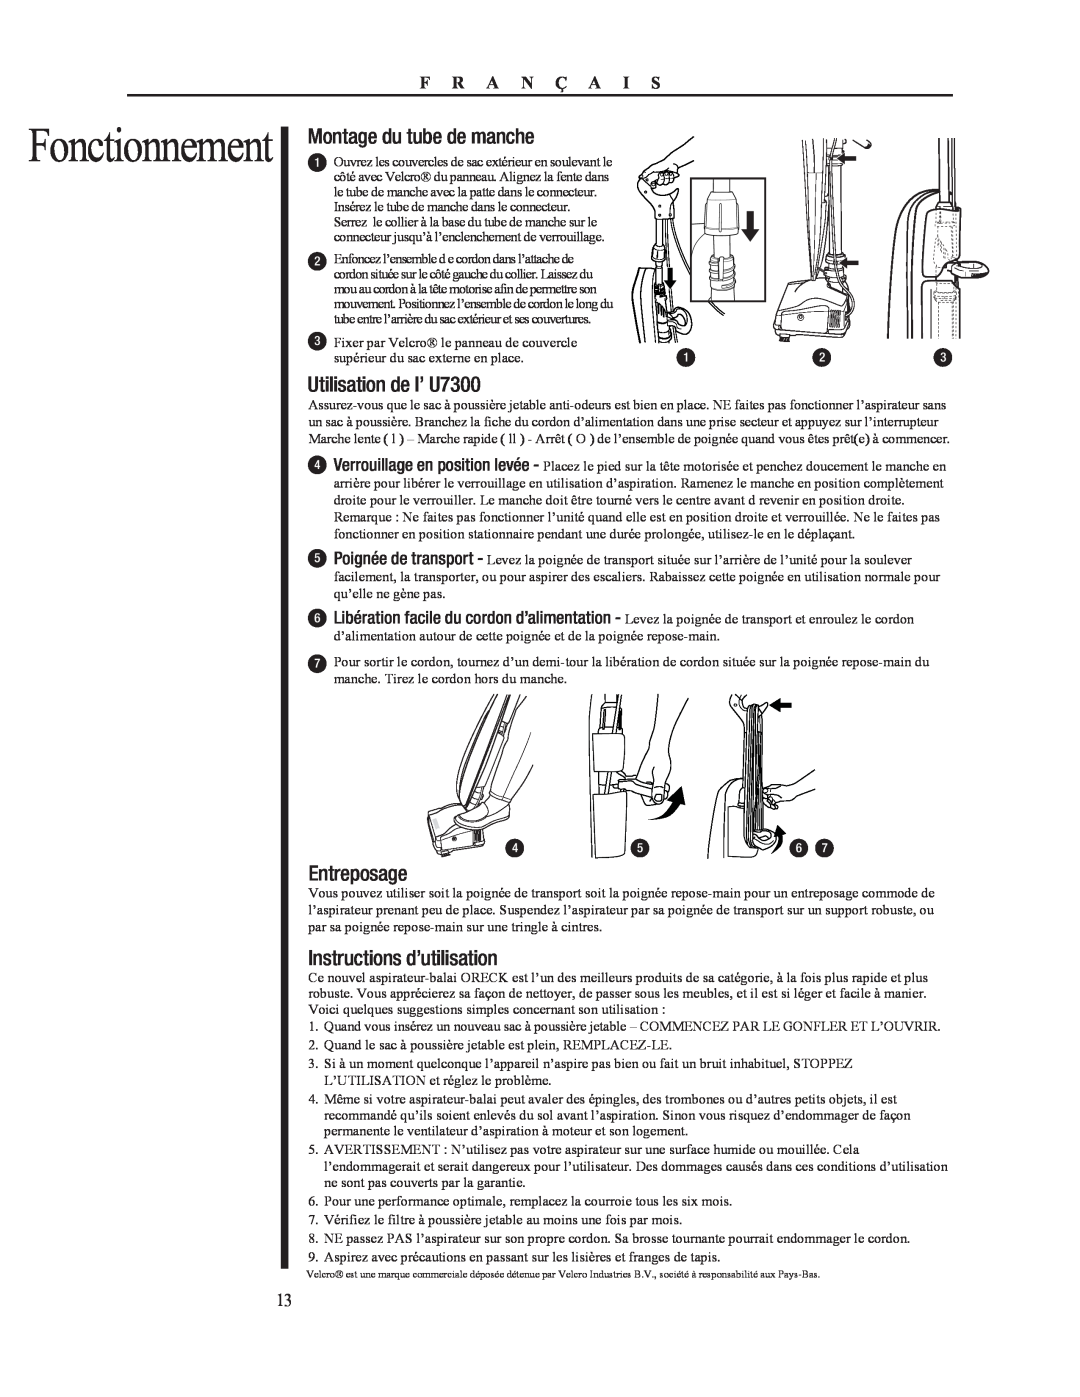 Oreck 79053-01REVA manual Montage du tube de manche, Utilisation de l’ U7300, Entreposage, Instructions d’utilisation 